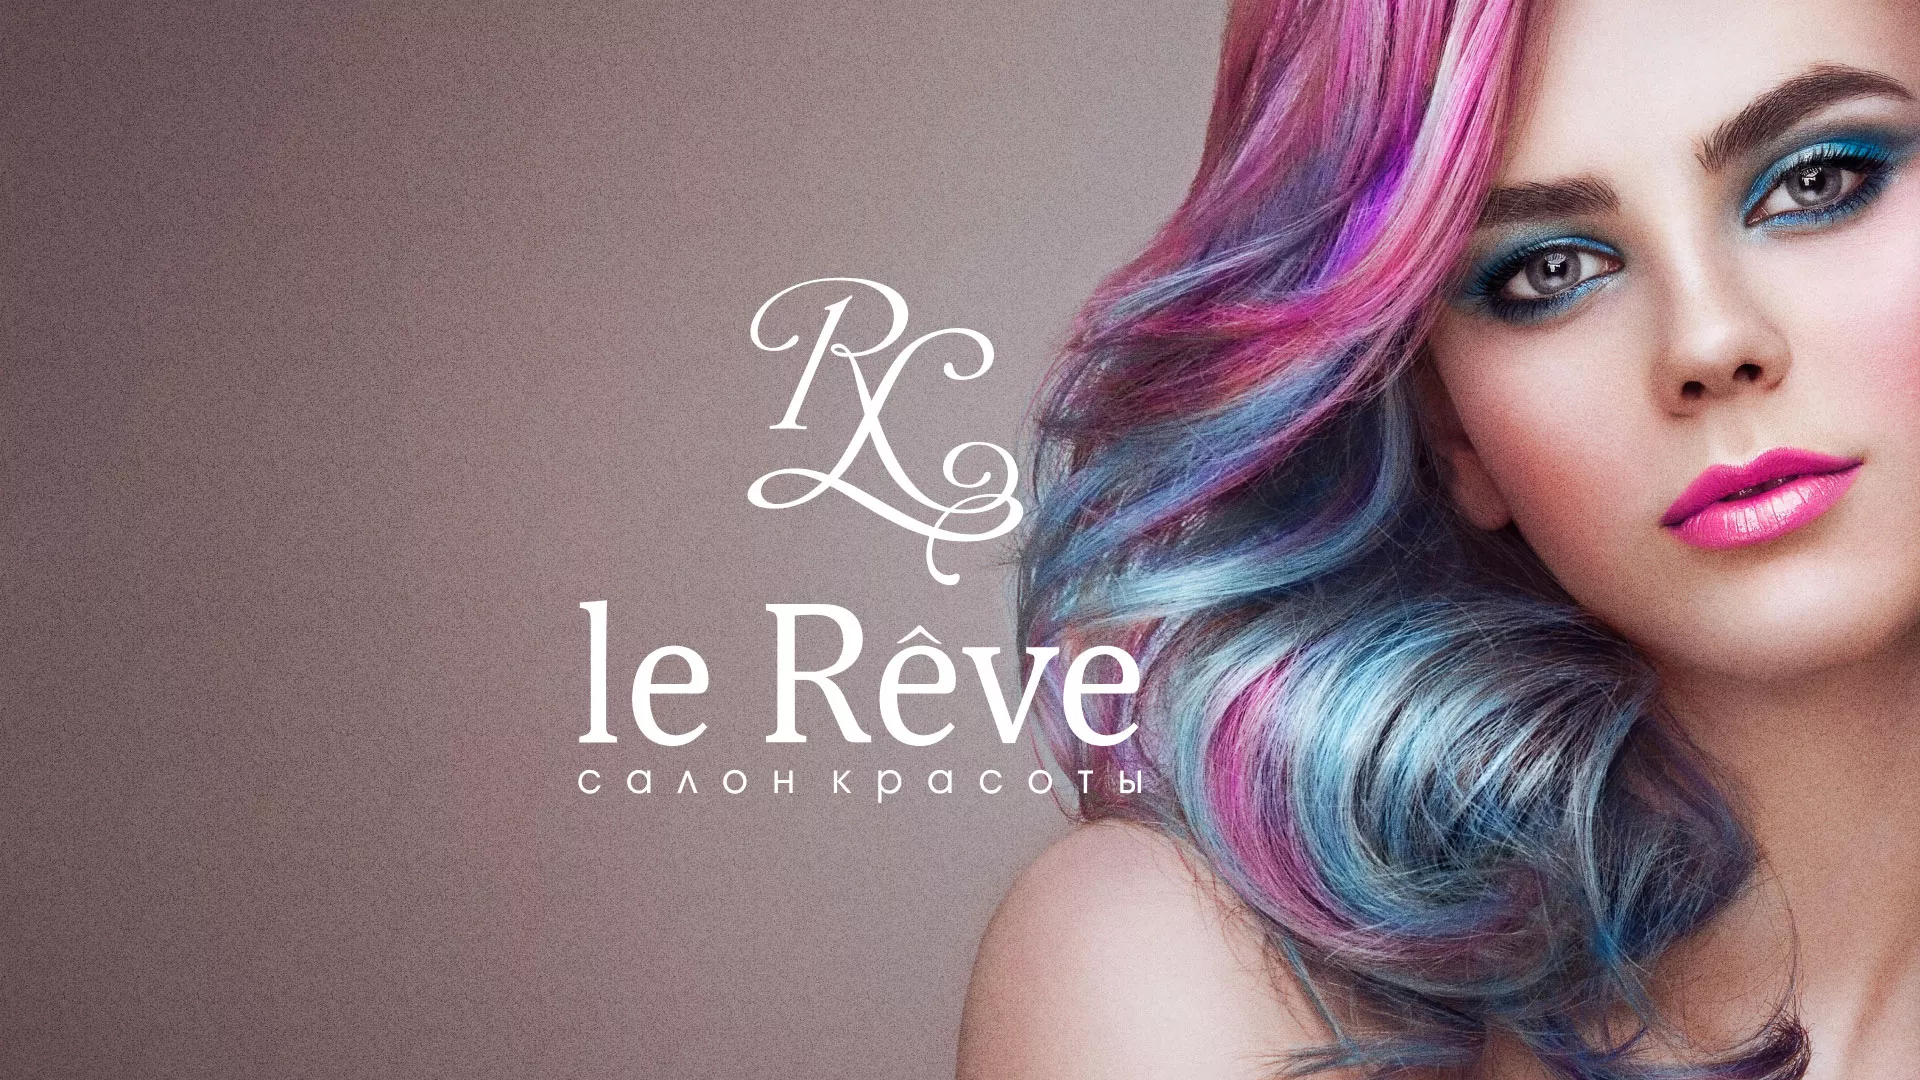 Создание сайта для салона красоты «Le Reve» в Улане-Удэ